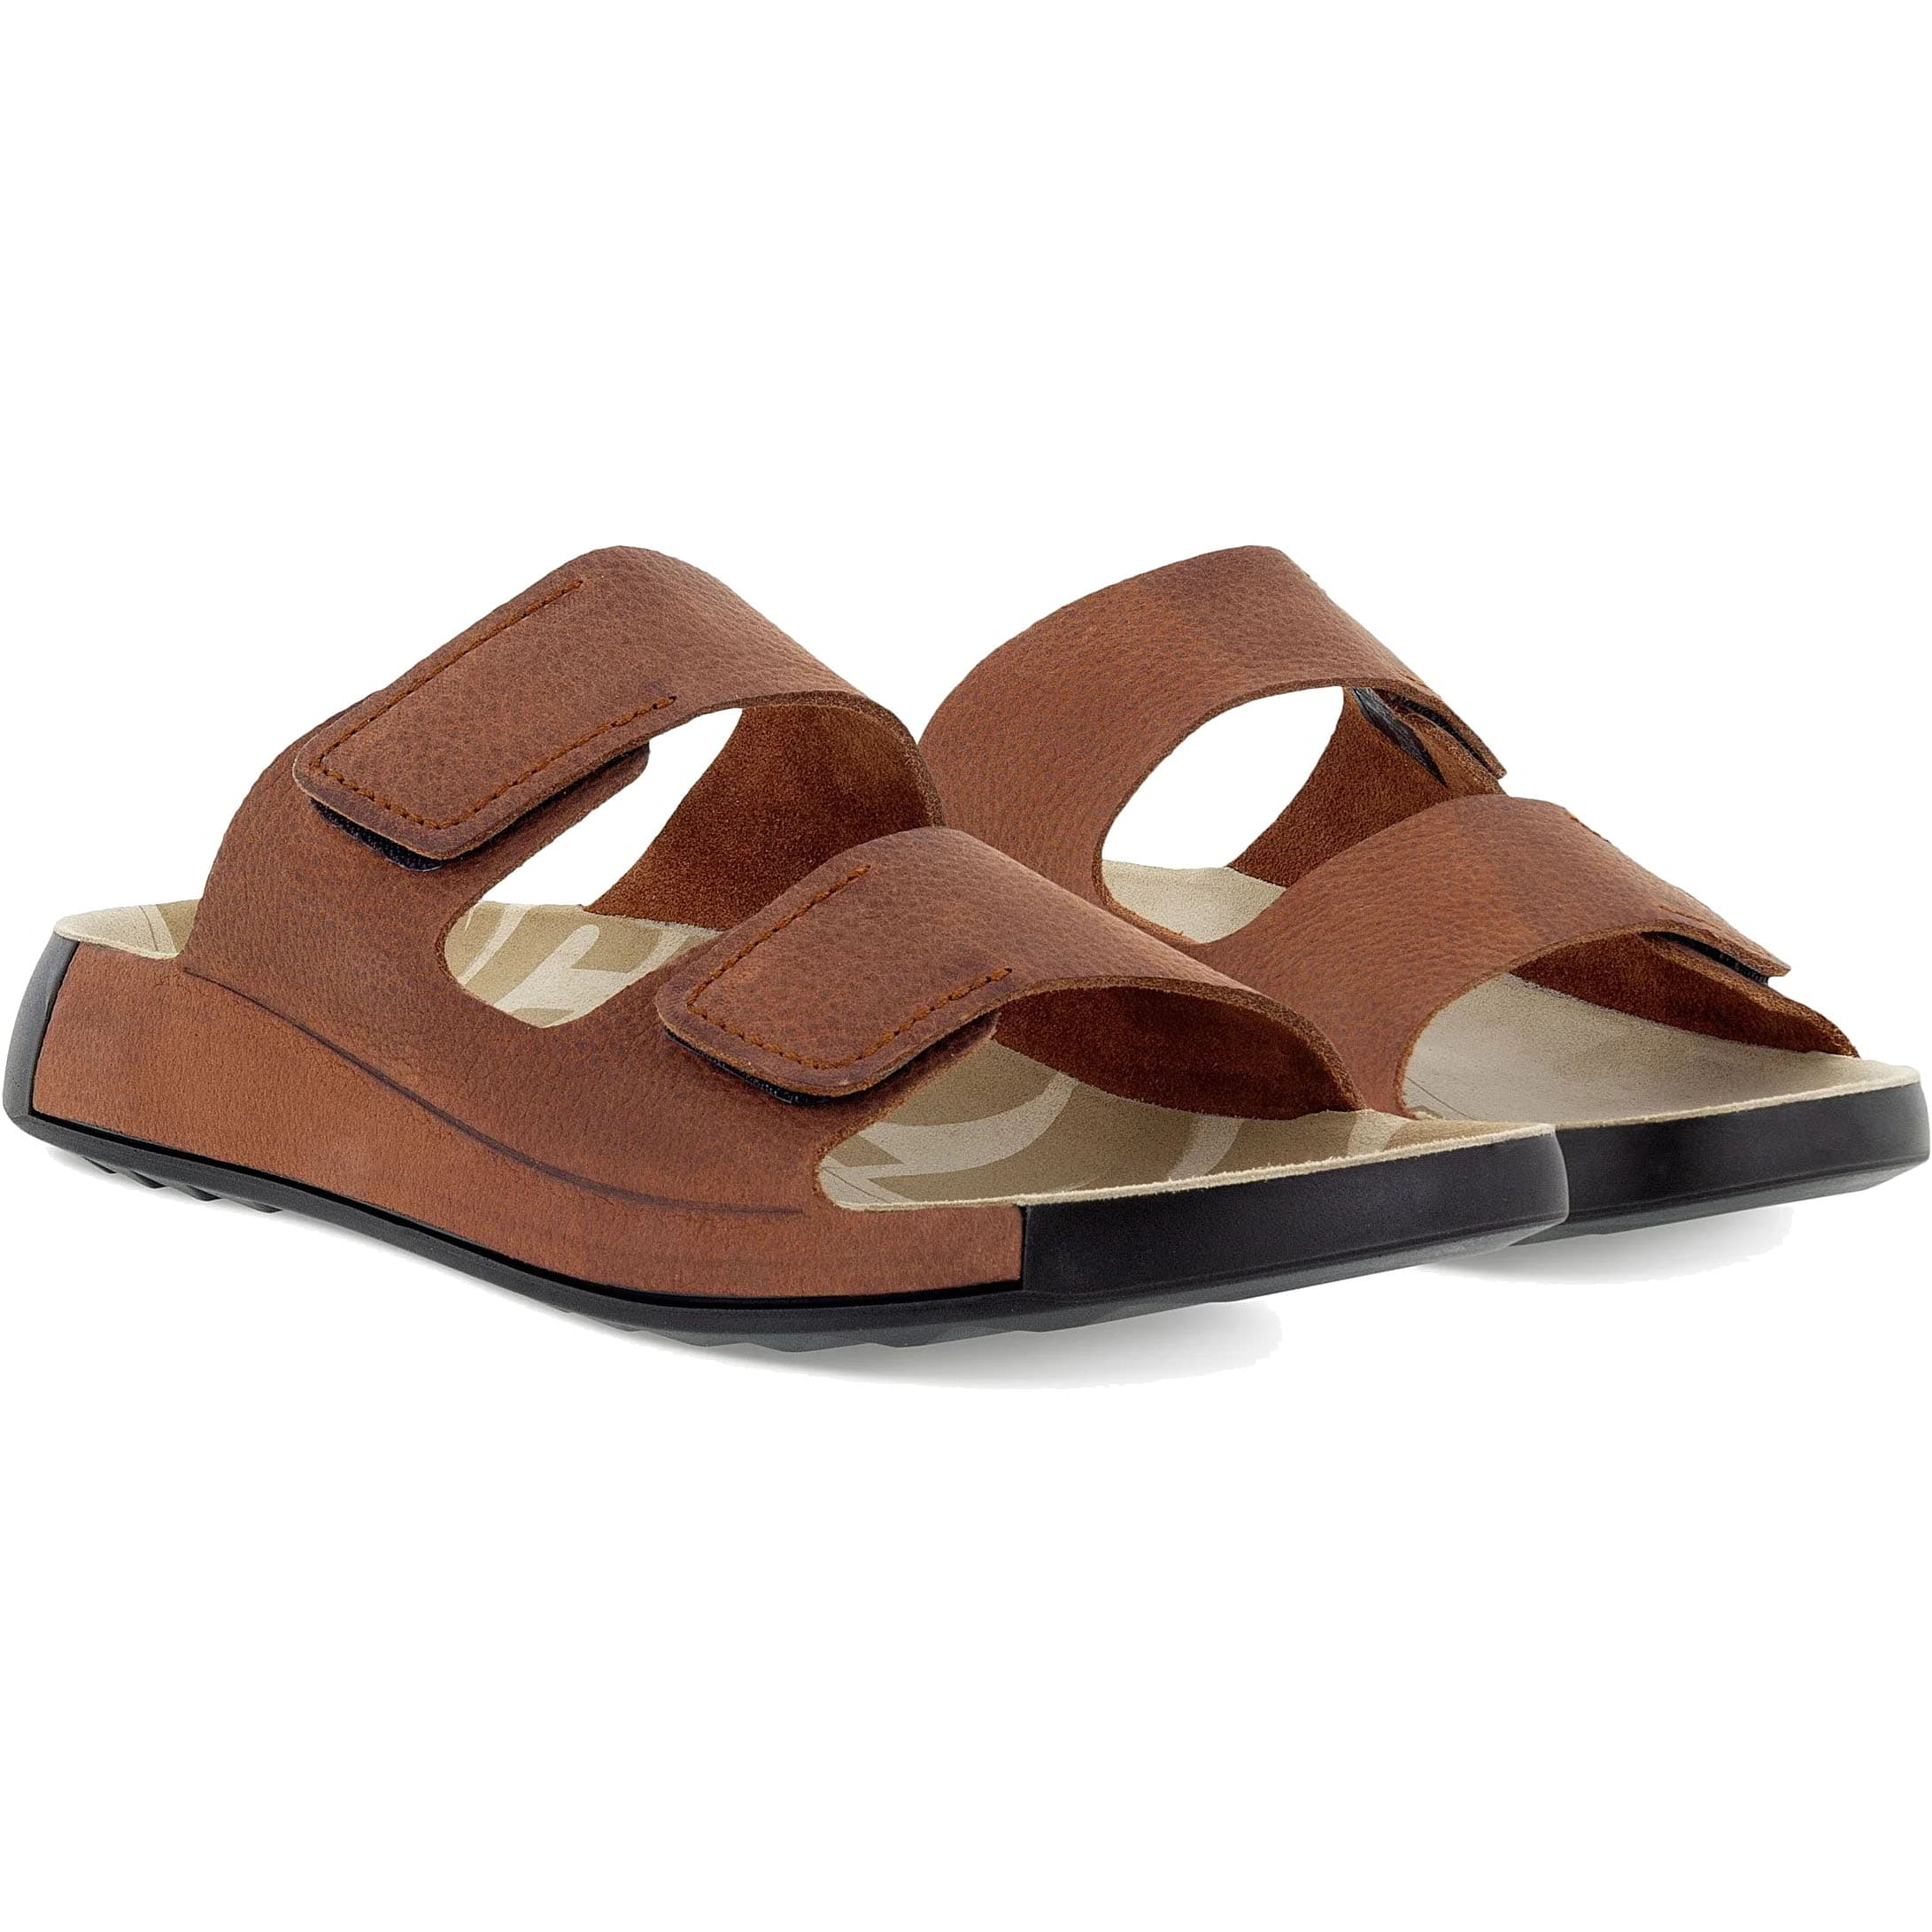 Ecco Shoes Mens 2nd Cozmo Adjustable Slide Sandals - UK 10 / EU 44 Brown 2951